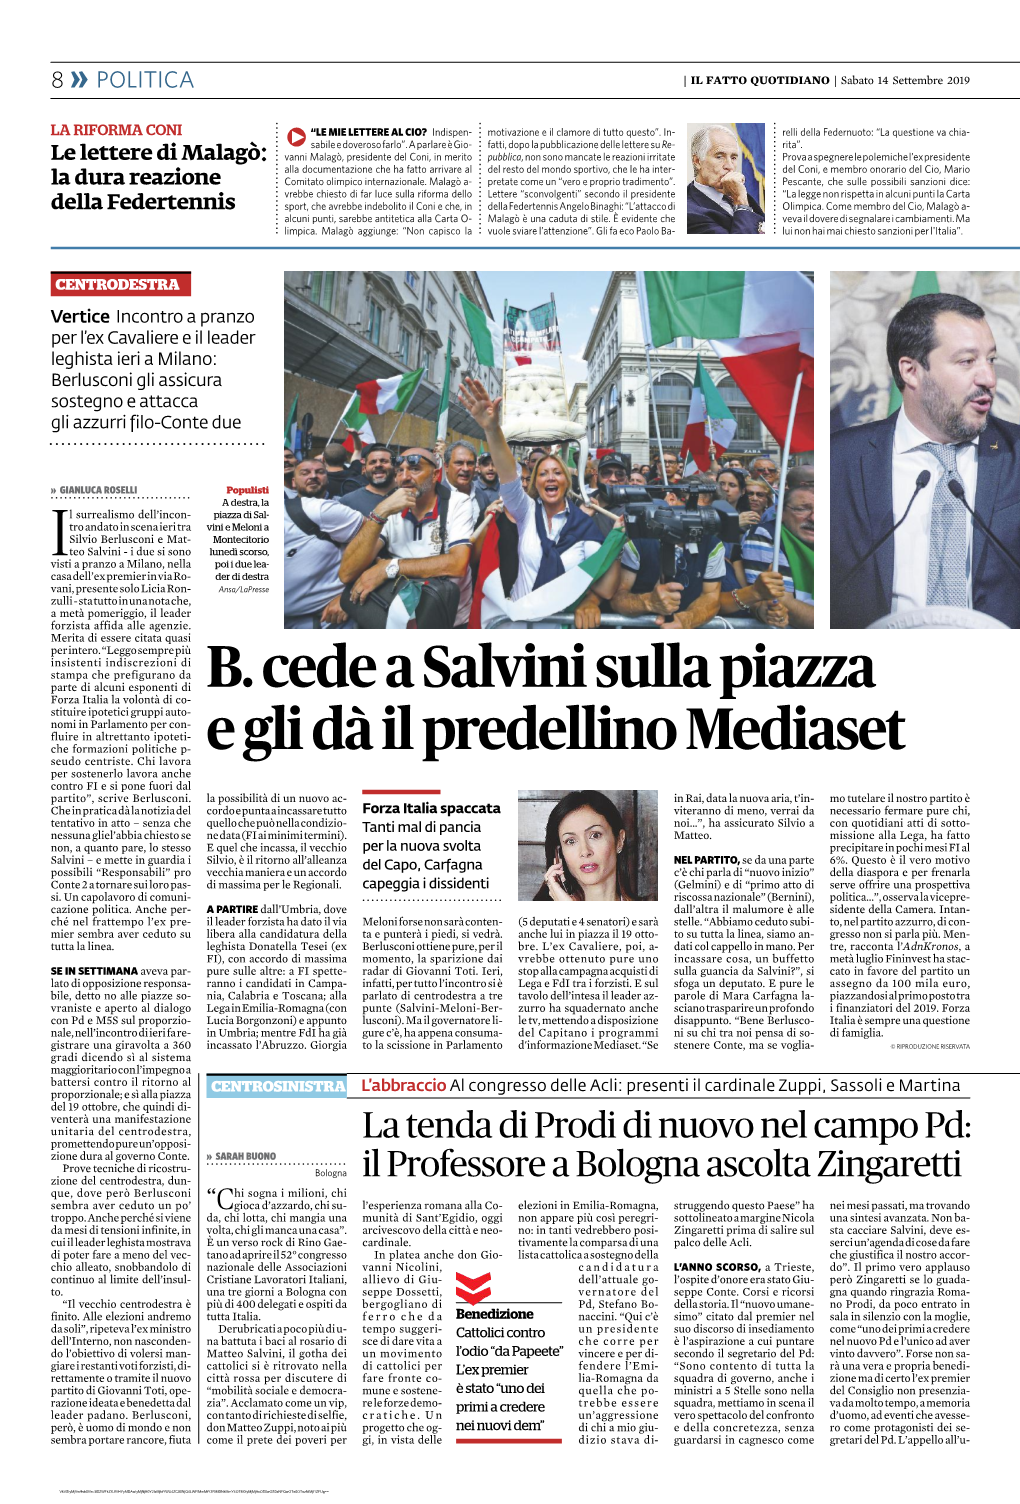 B. Cede a Salvini Sulla Piazza E Gli Dà Il Predellino Mediaset